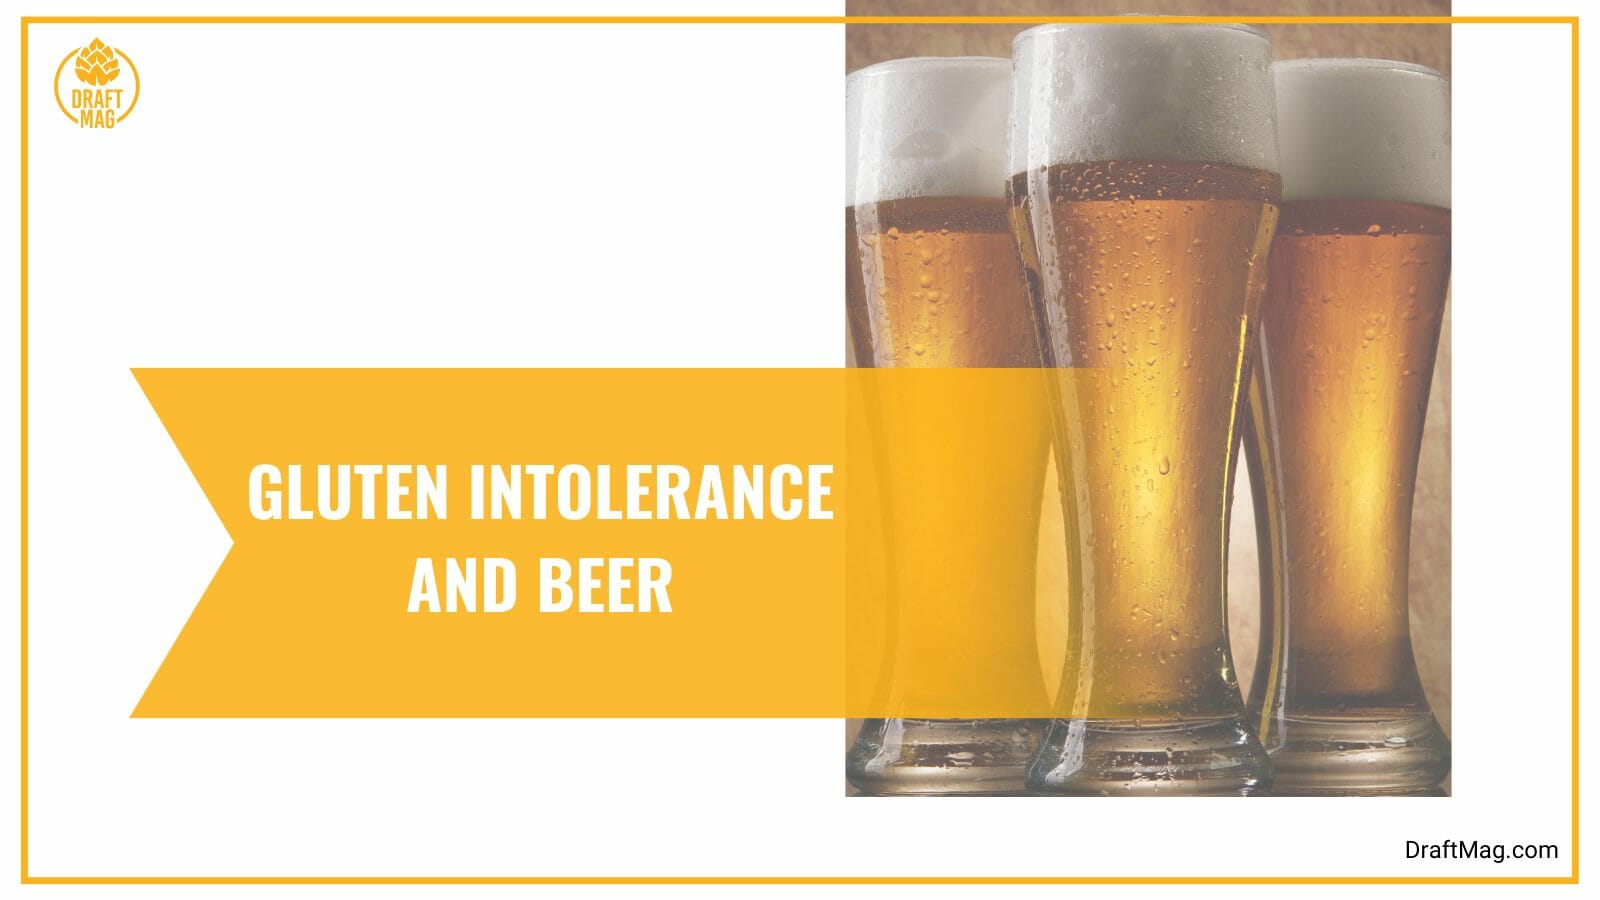 Gluten intolerance and beer